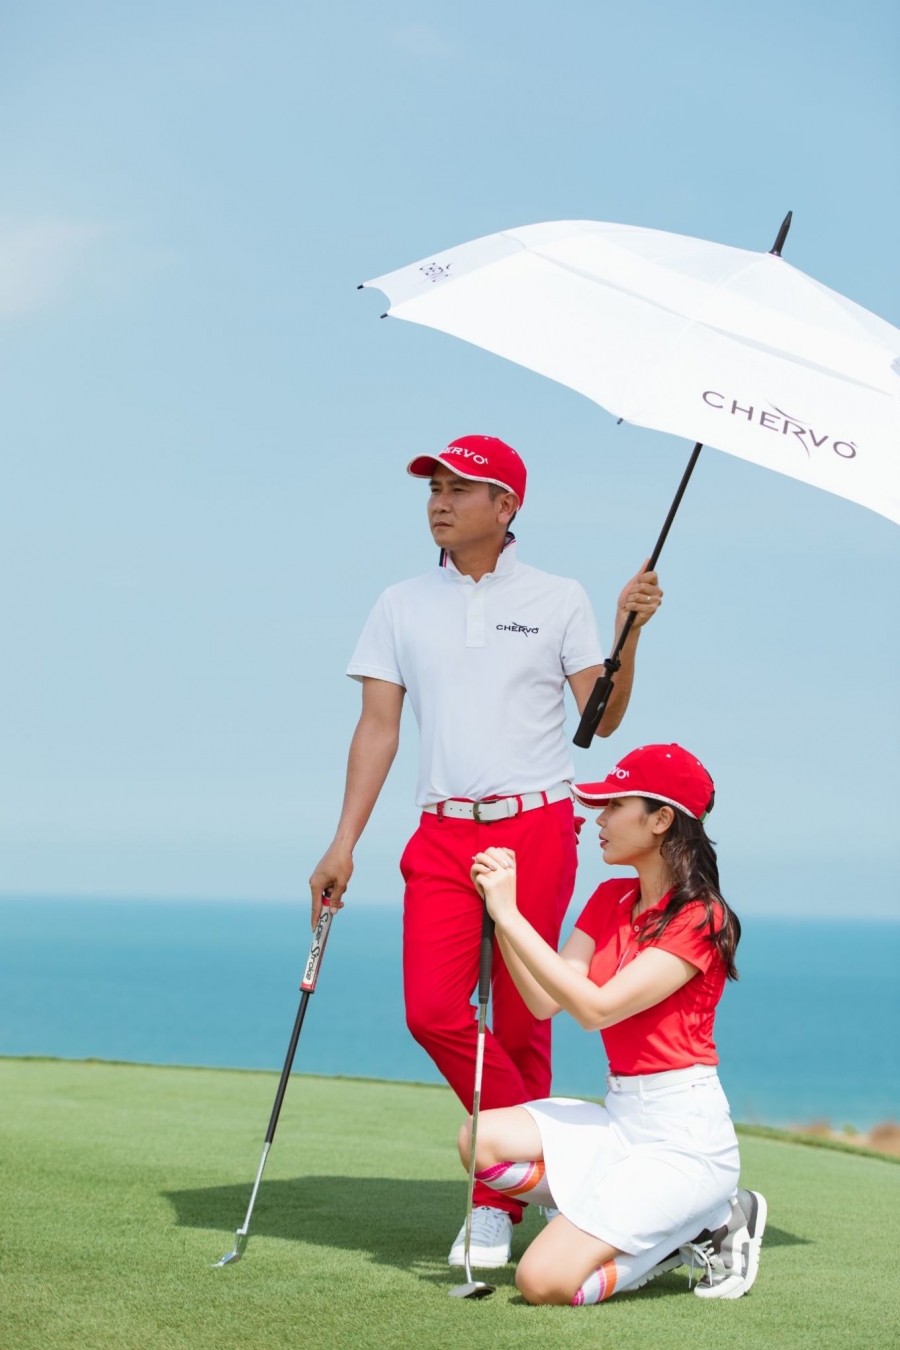 Hồ Hoài Anh và Lưu Hương Giang thường xuyên diện đồ golf đồng màu, thể hiện tình cảm gắn kết trên sân cỏ.